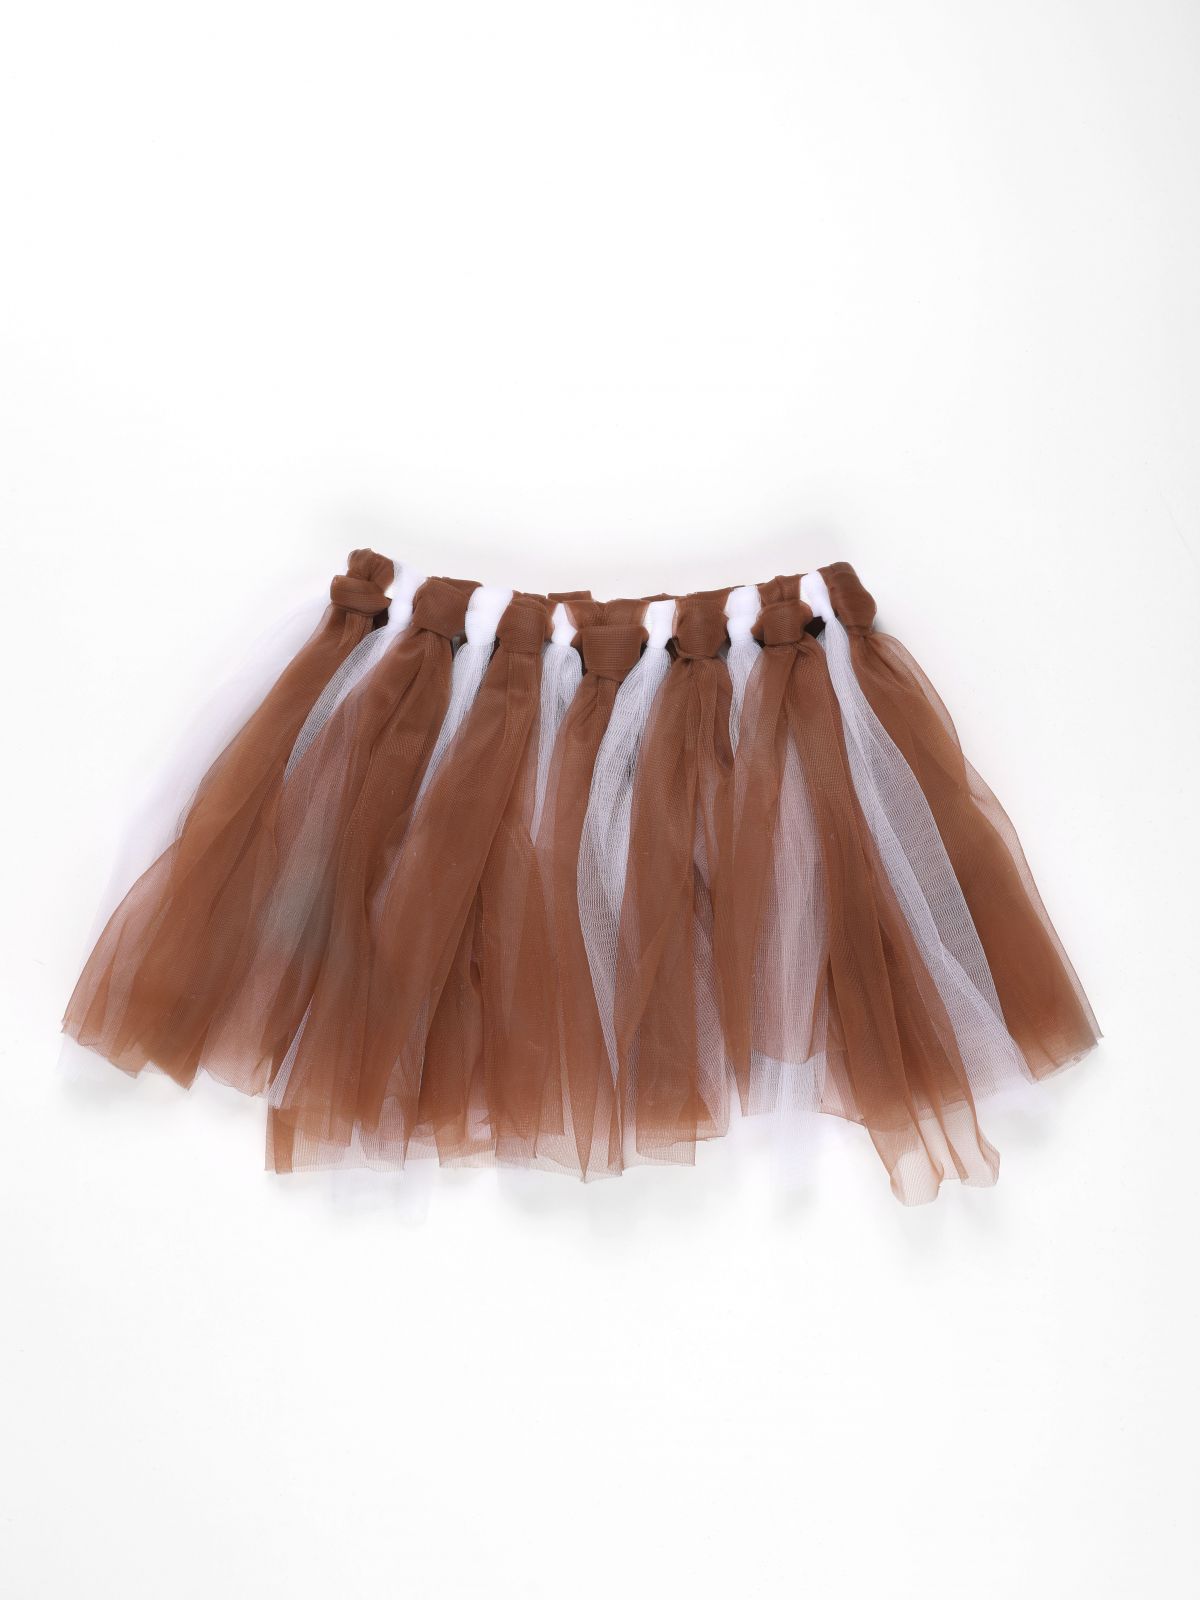  חצאית וקשת לתחפושת איילה / Purim Collection של SHOSHI ZOHAR